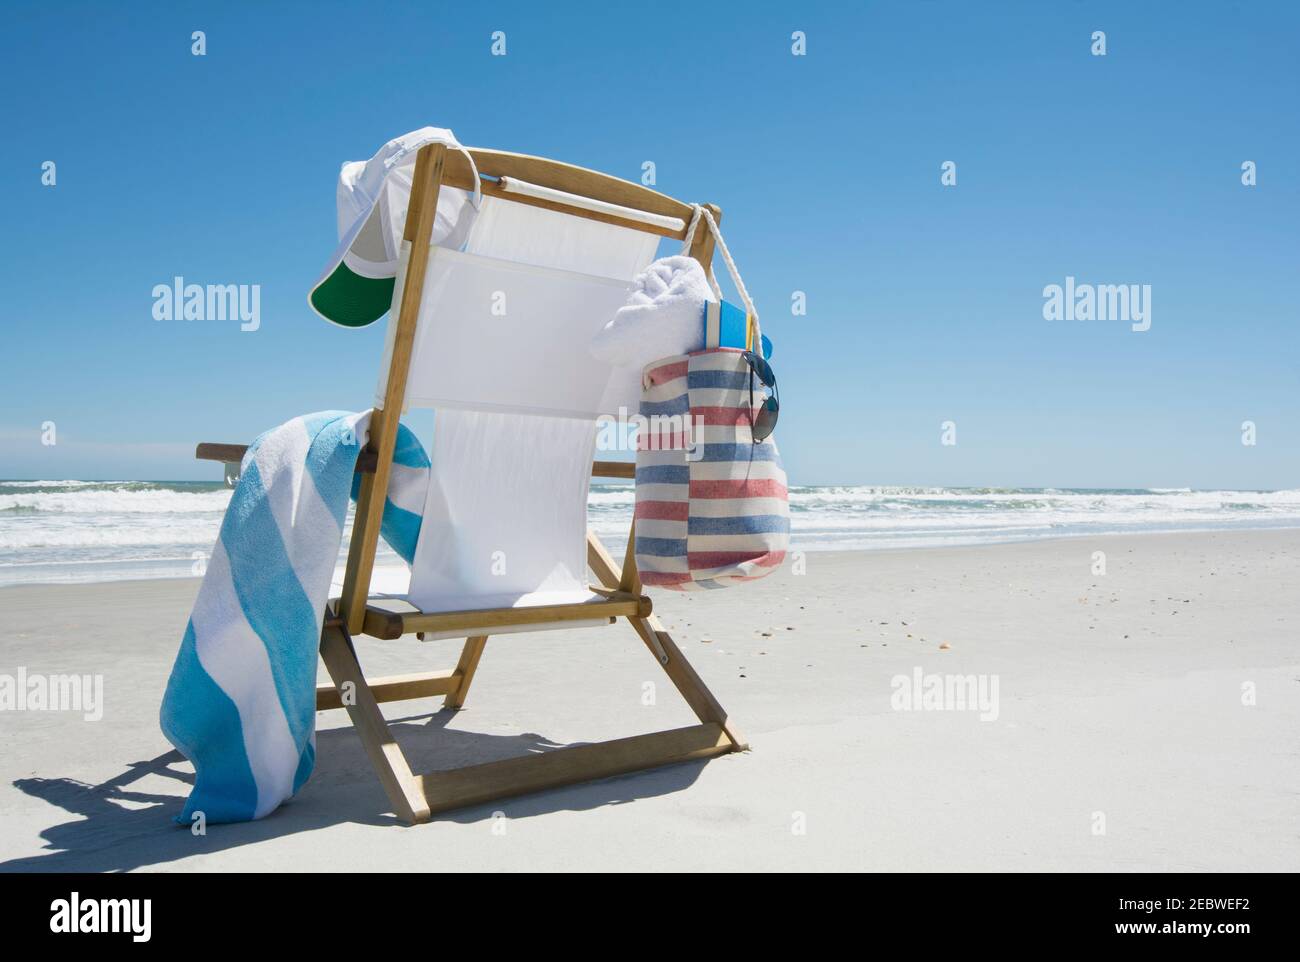 Canvas chair on beach Stock Photo